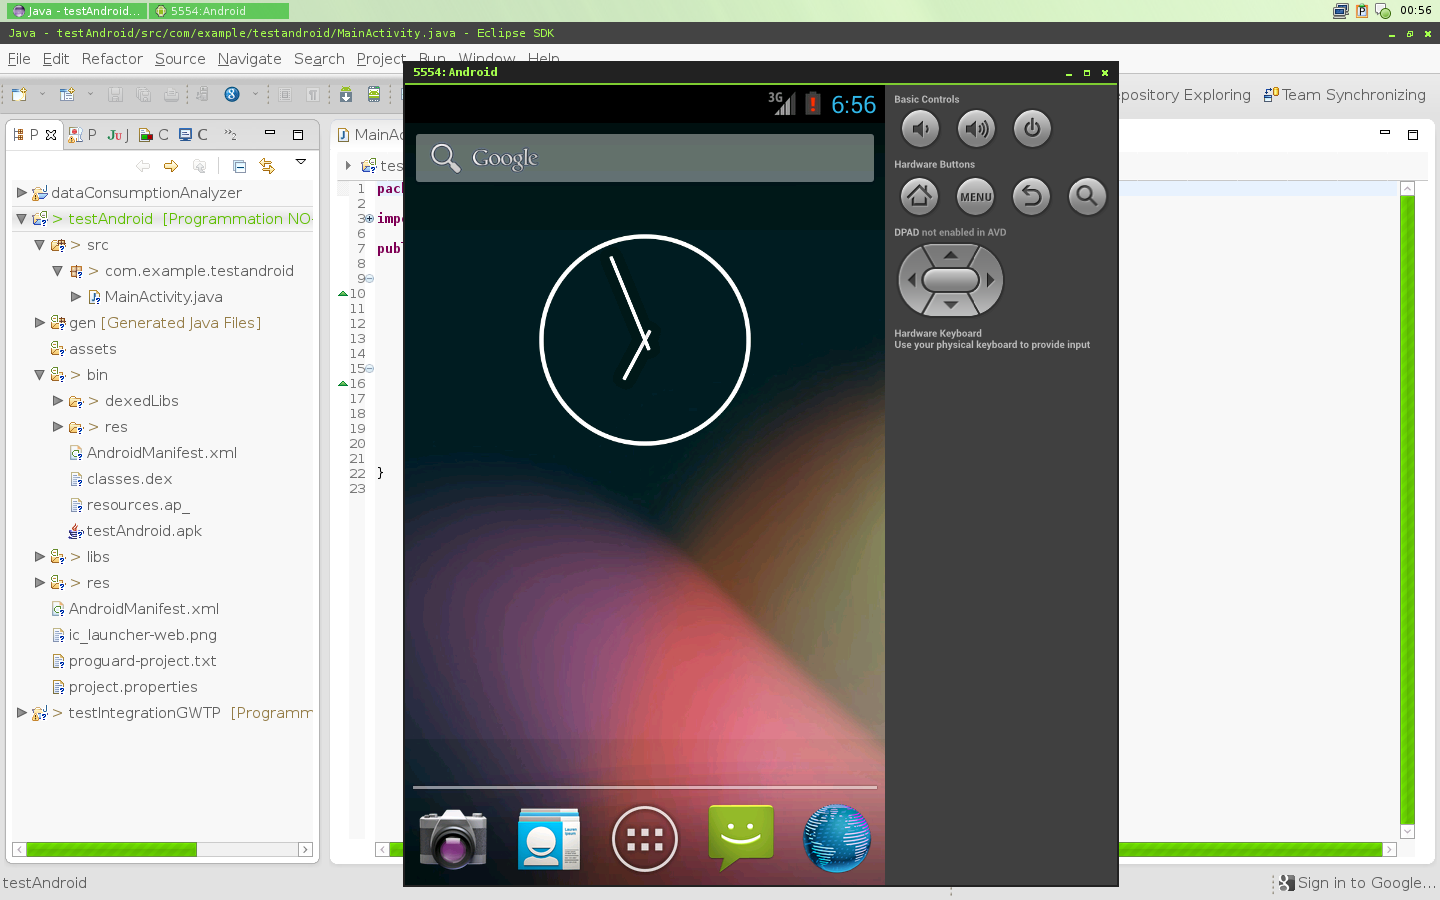 Prise d’écran de l’environnement de développement intégré Eclipse lors du développement d’une application Androïd avec l’émulateur de lancé